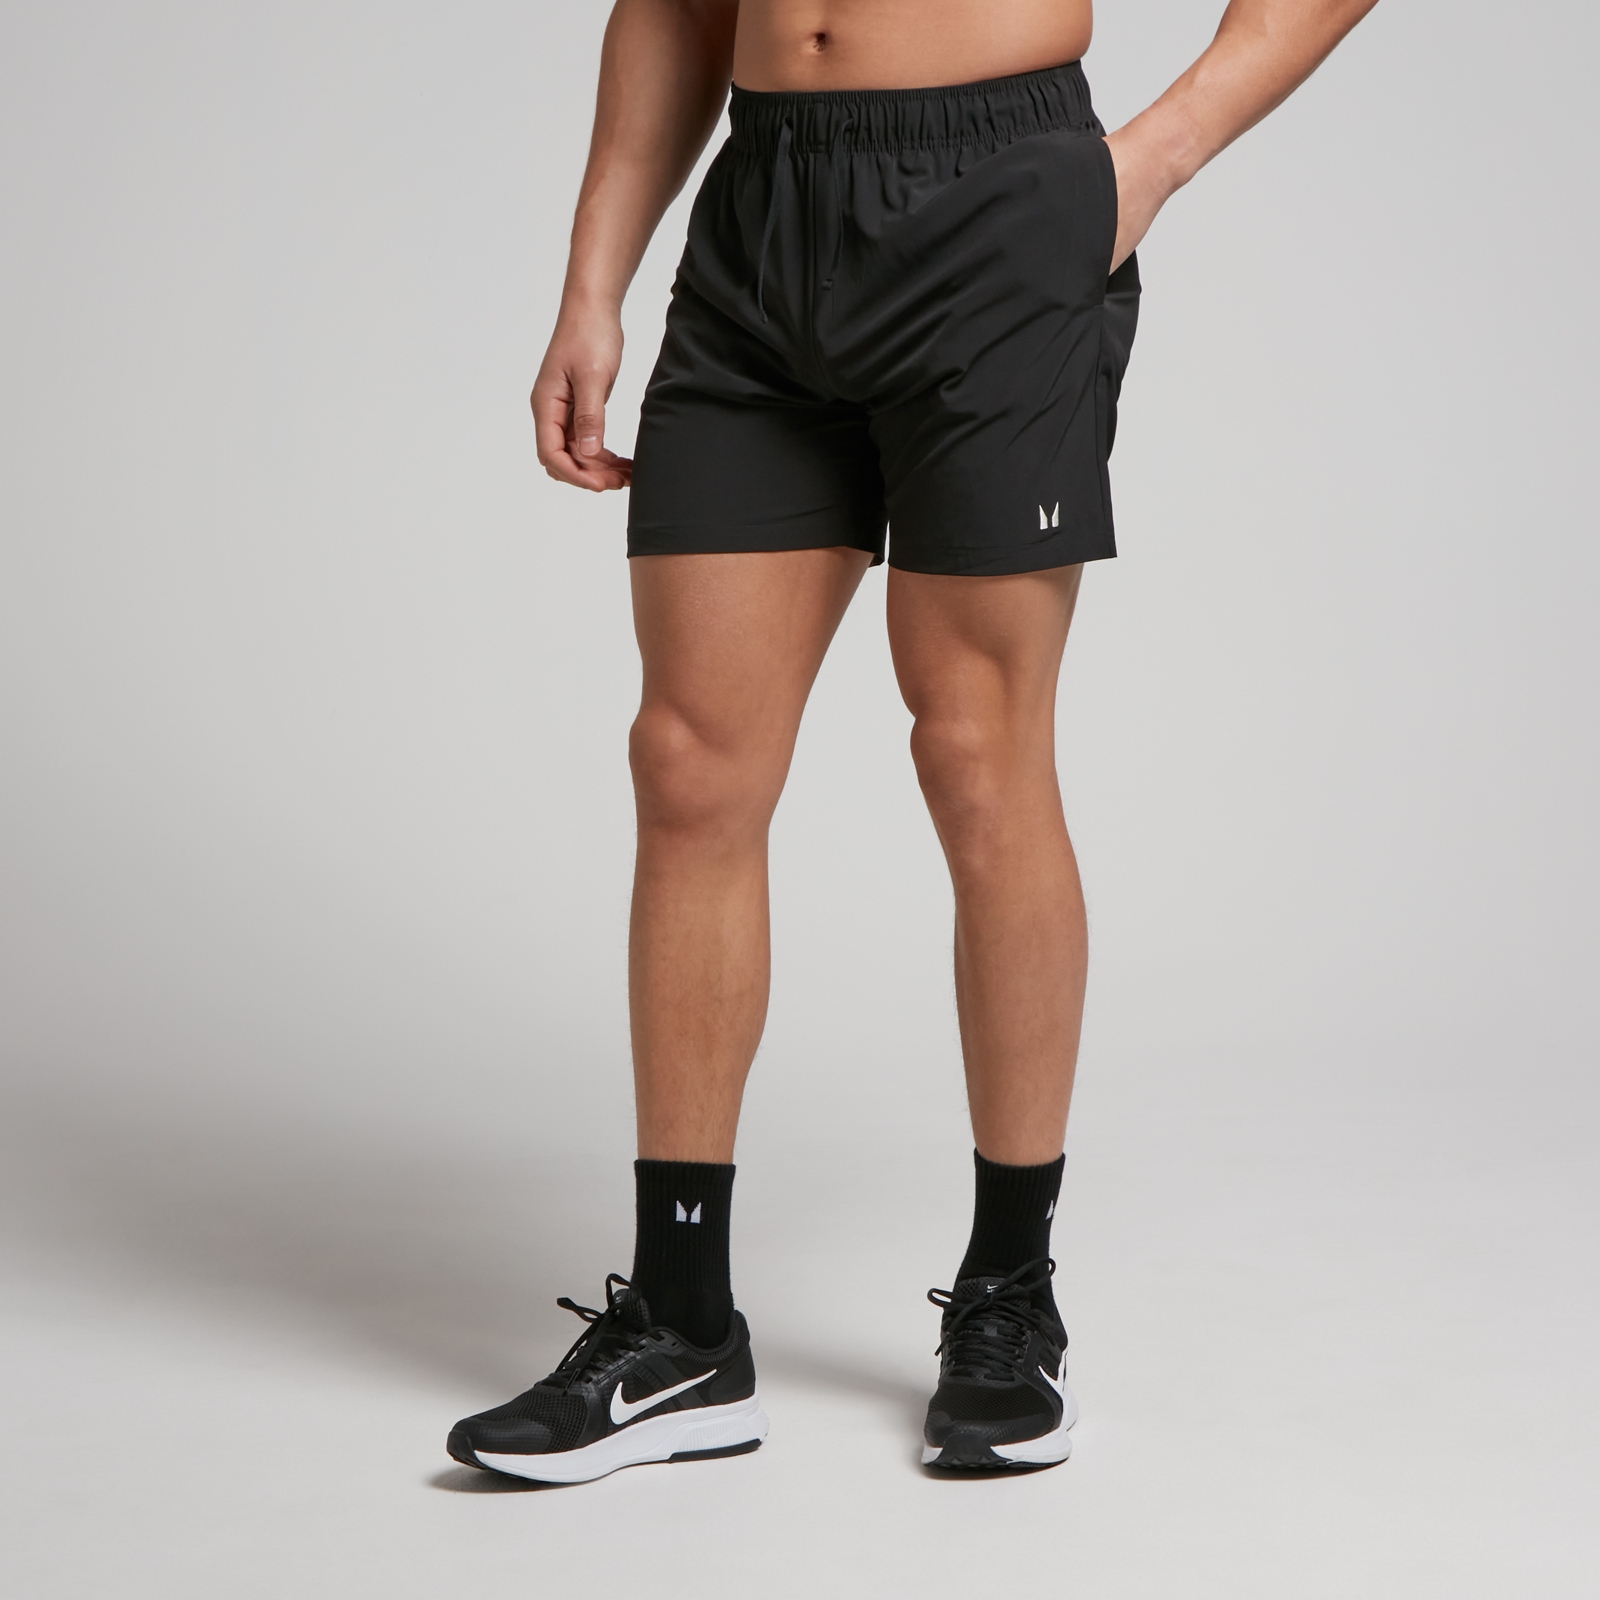 MP muške tkane kratke hlače za trening – crne - XS